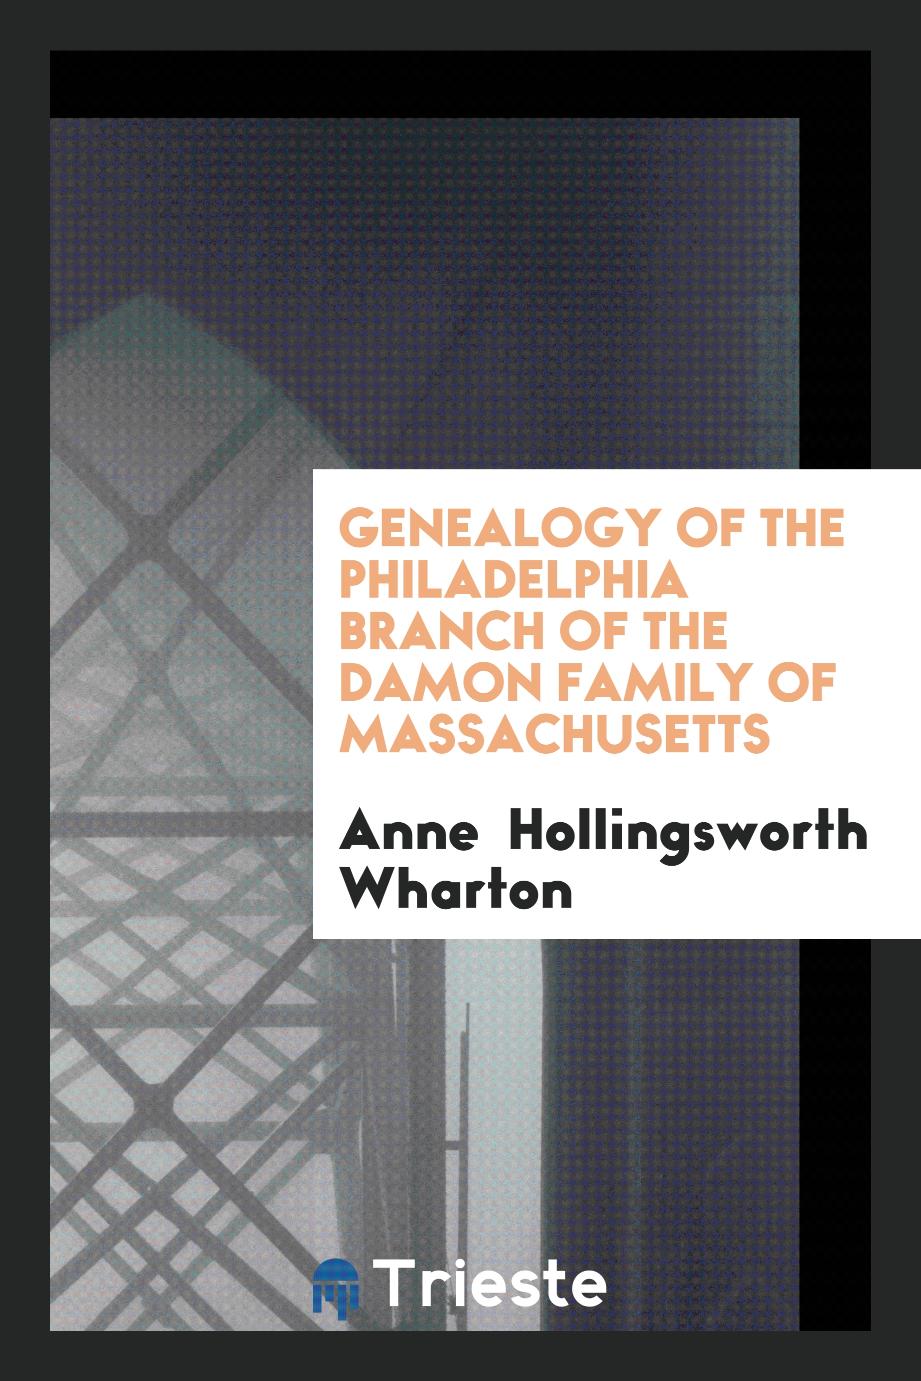 Genealogy of the Philadelphia branch of the Damon family of Massachusetts